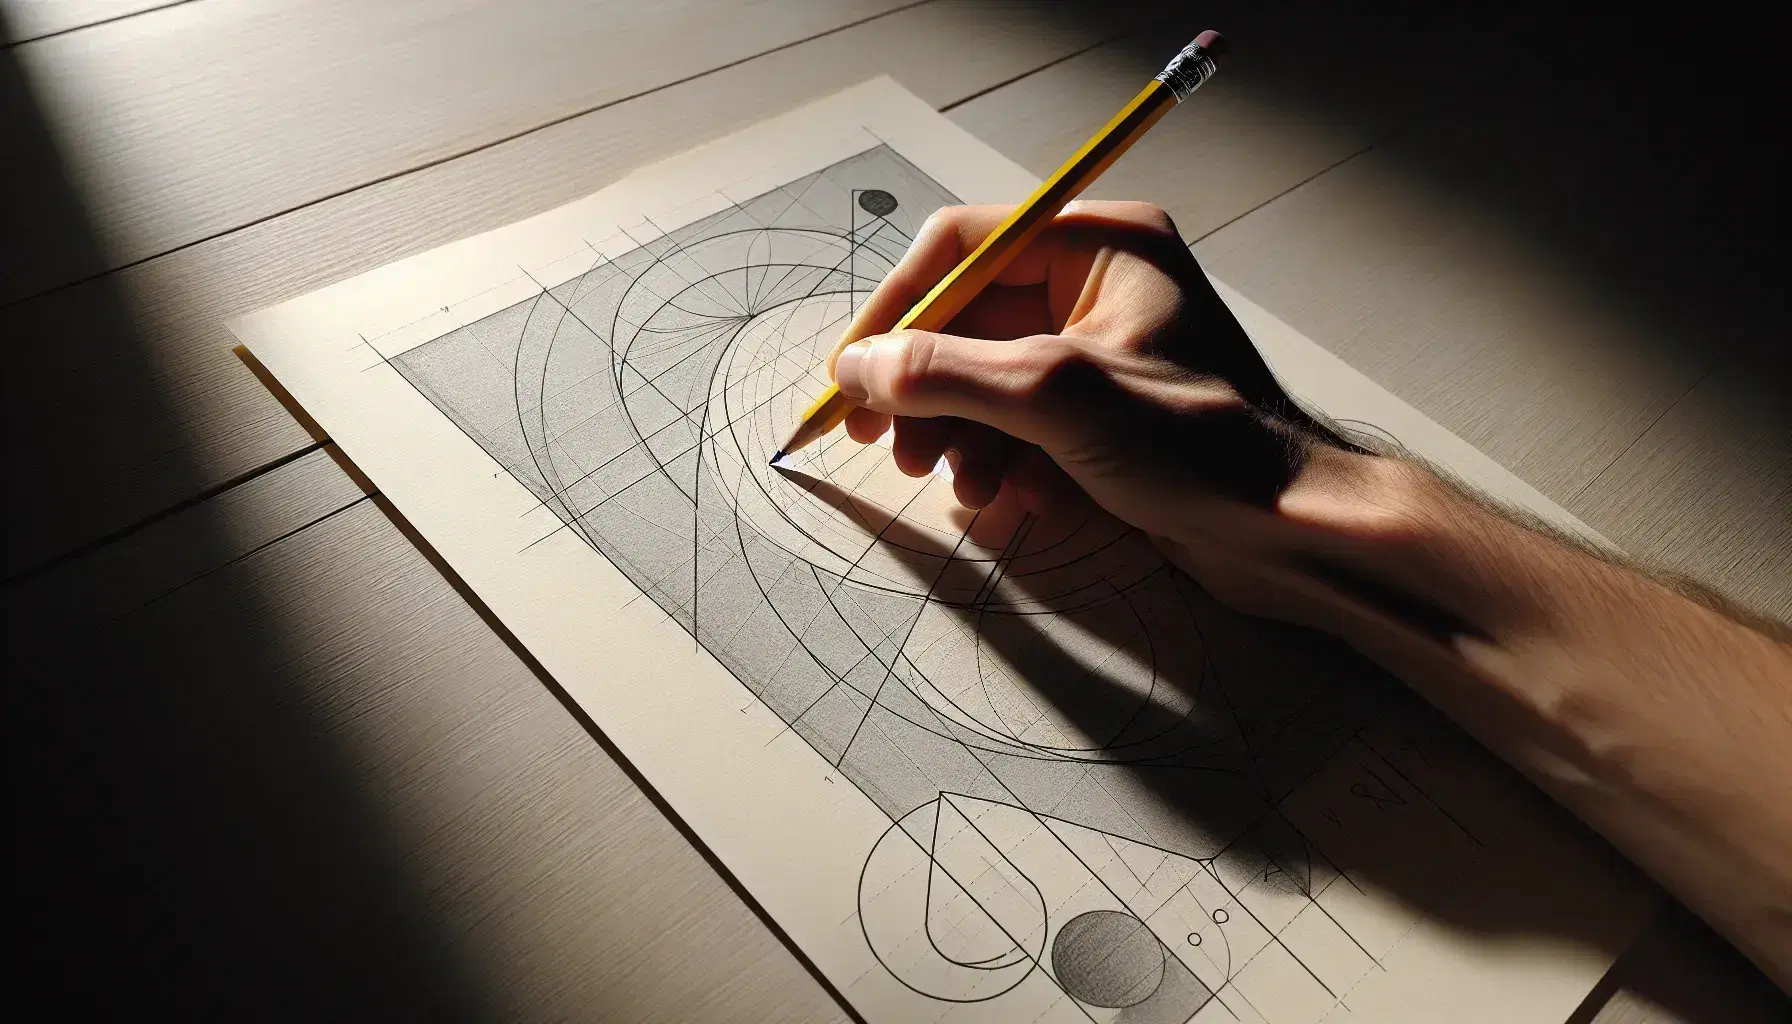 Mano sosteniendo lápiz de grafito sobre papel con líneas y formas geométricas dibujadas, en superficie de madera clara.